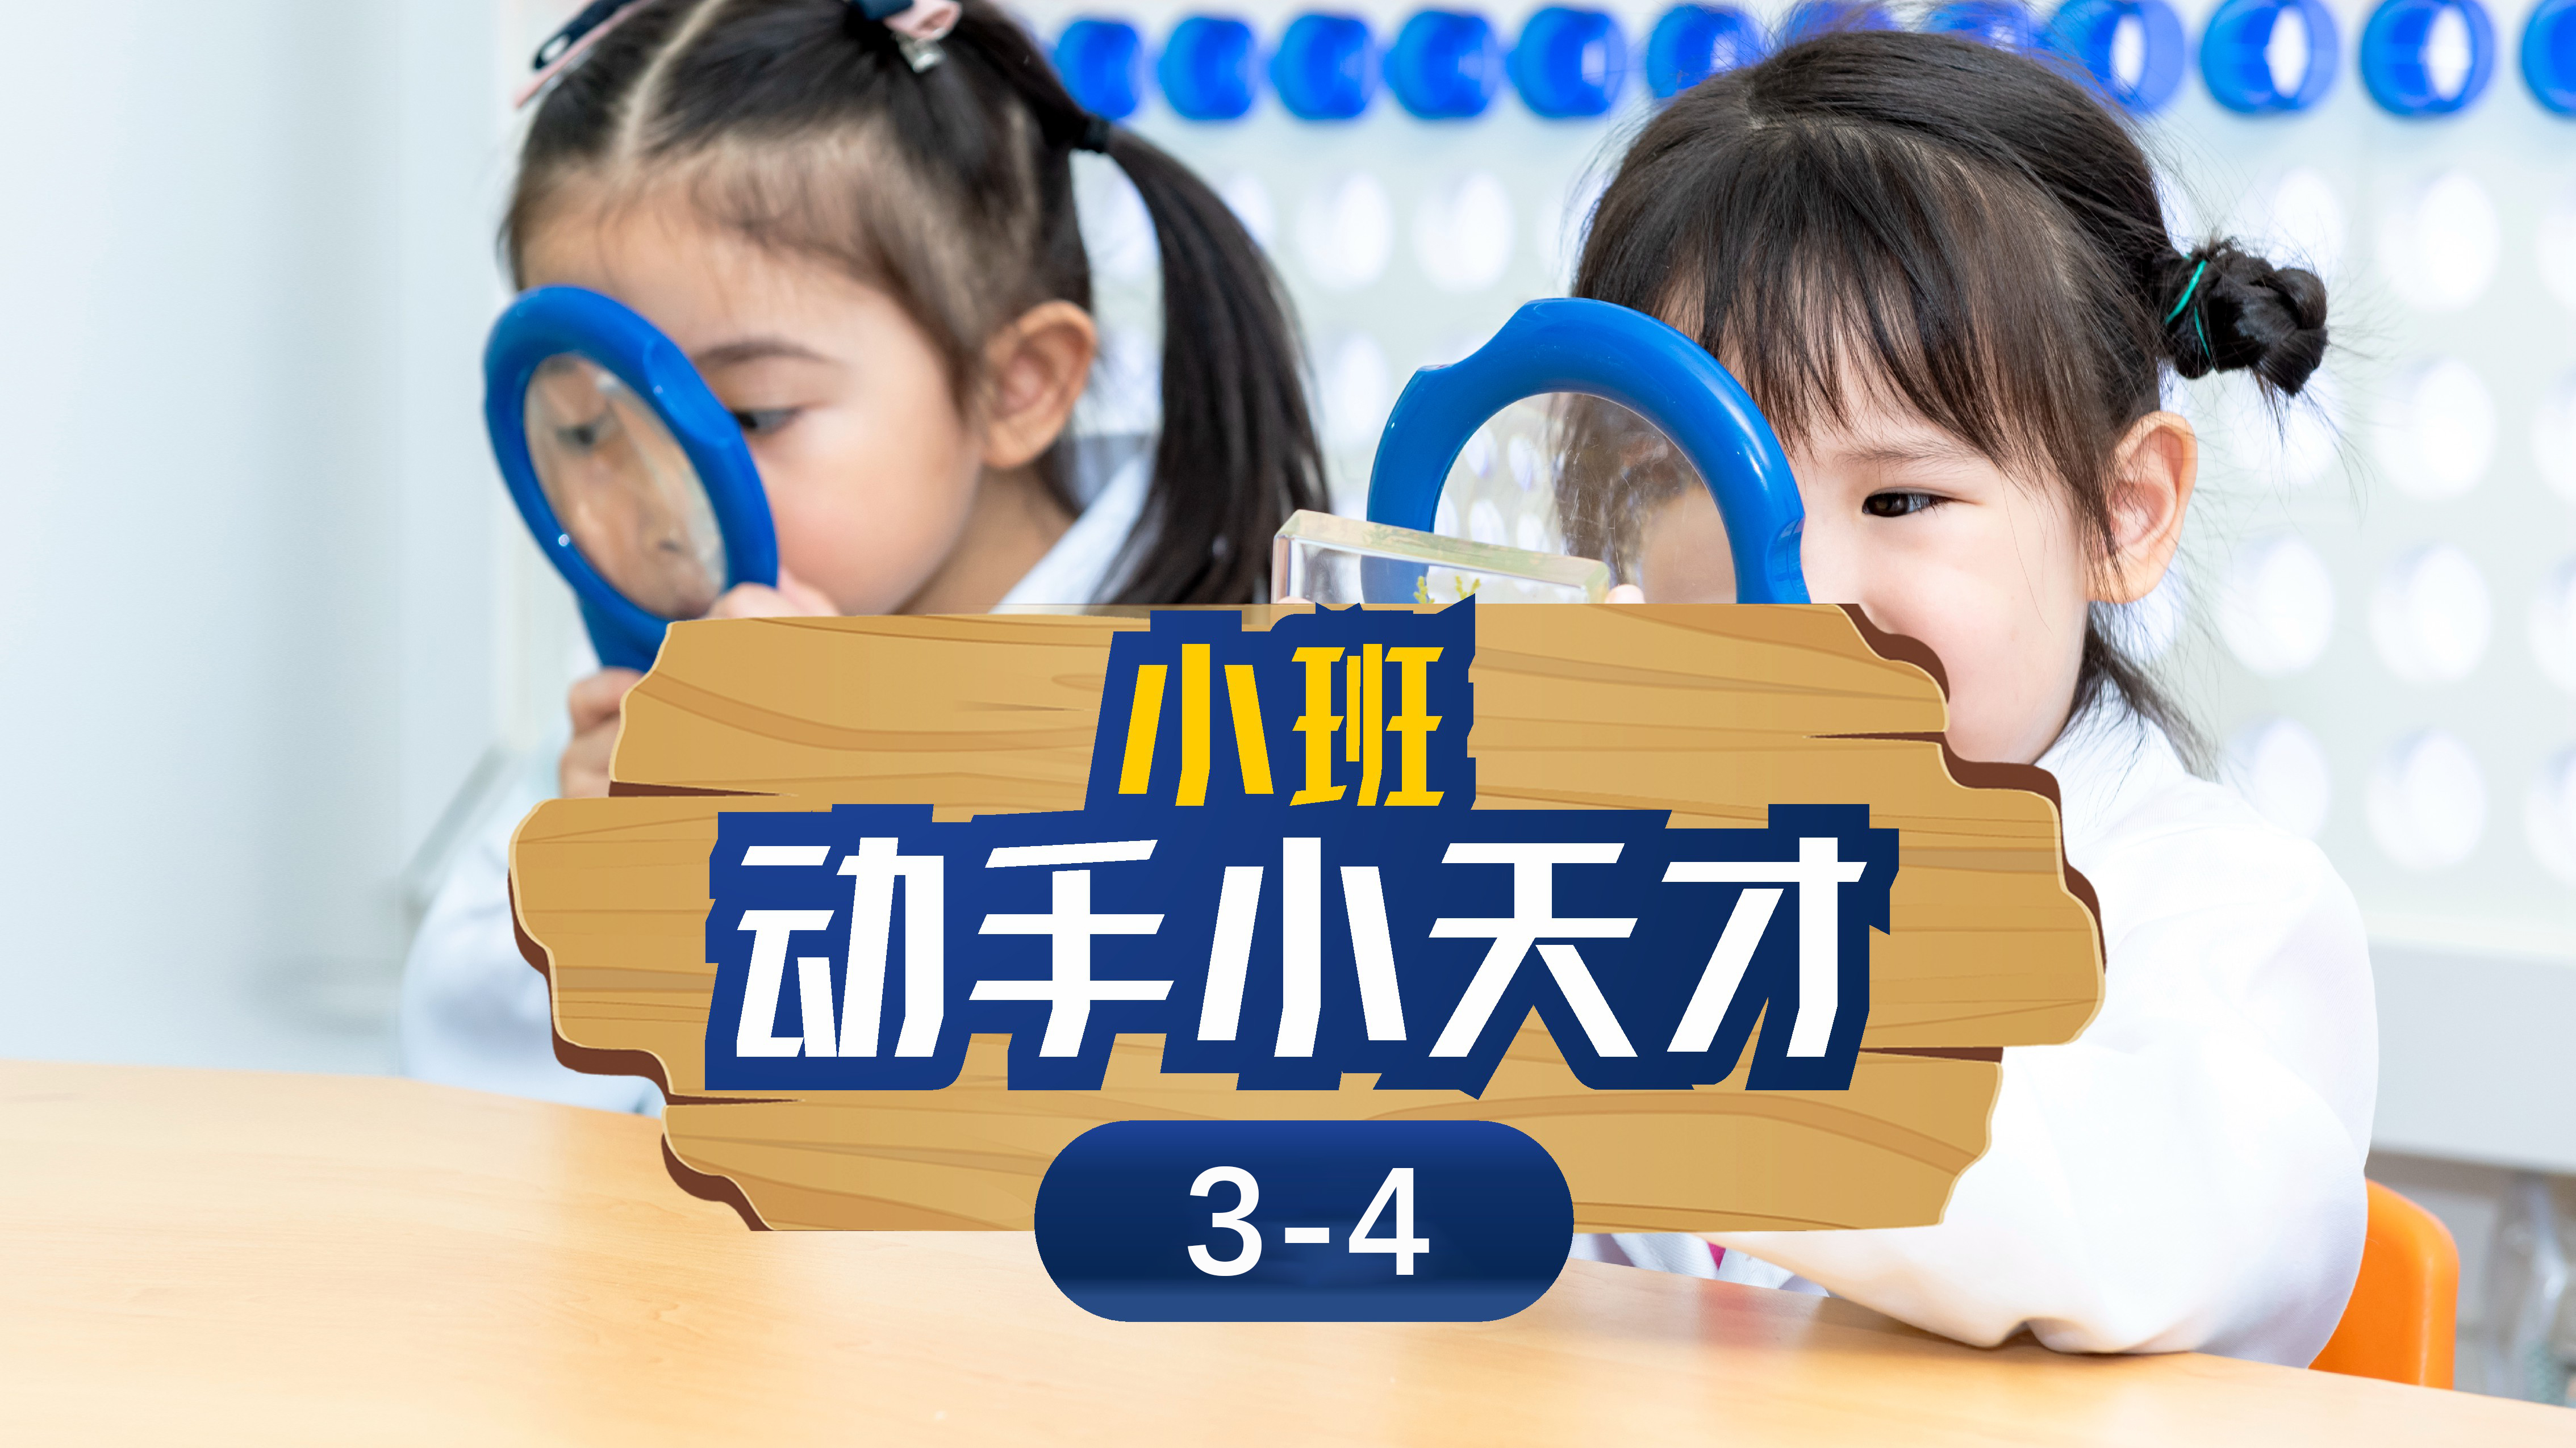 深圳斯坦星球科创编程[3-4岁]动手小天才科学课图片